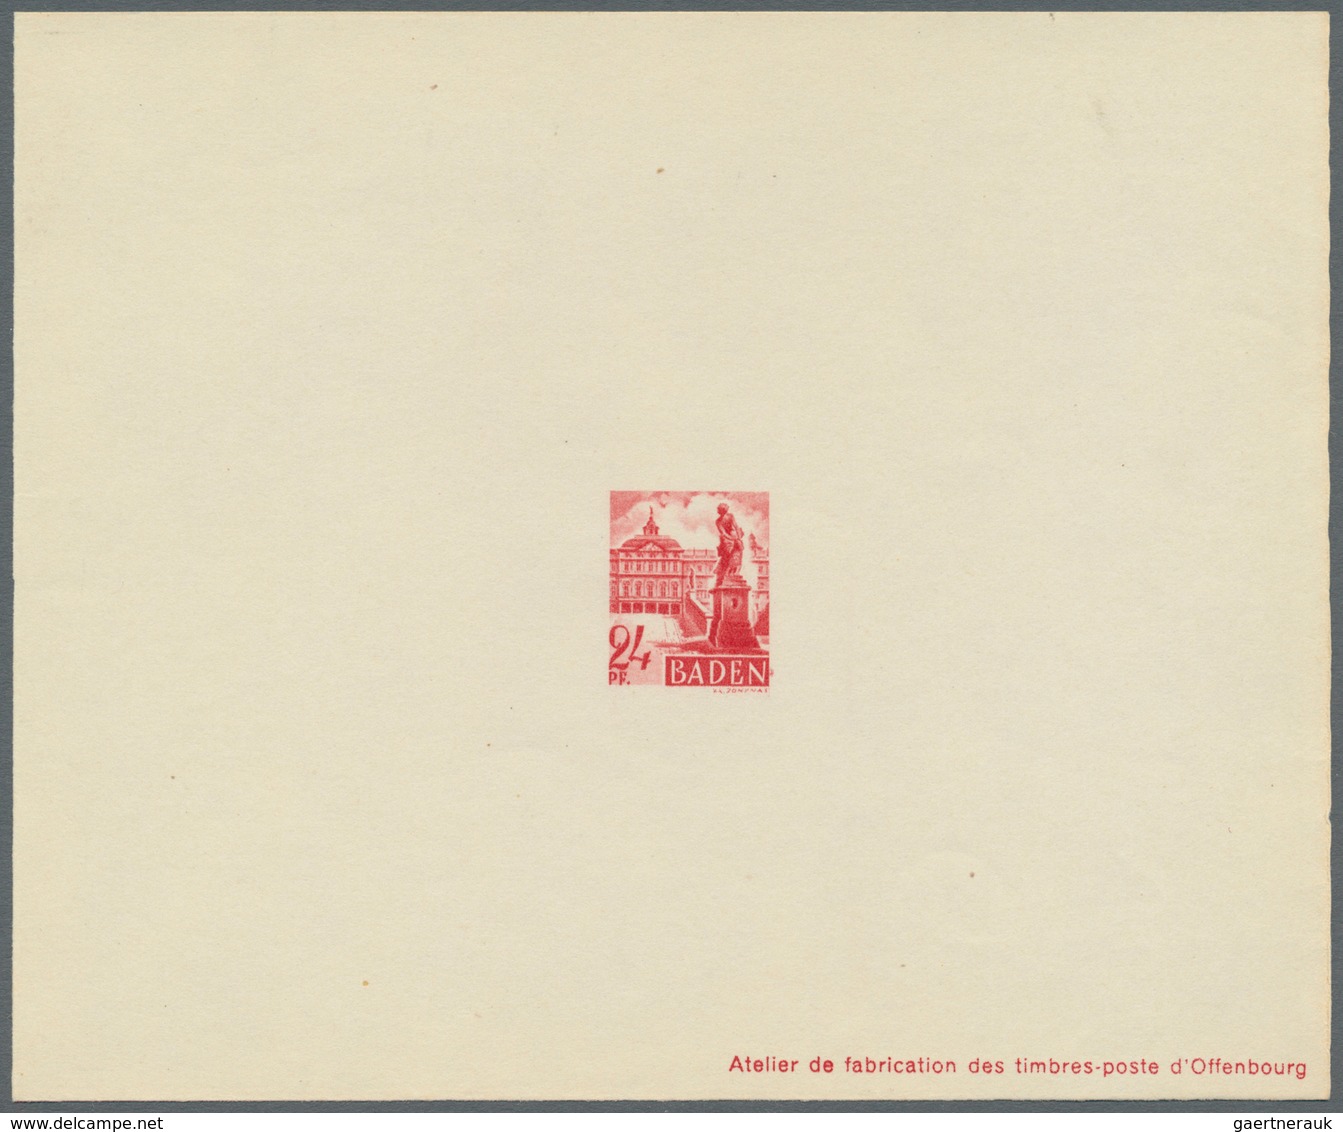 Französische Zone - Baden: 1947, 2 Pfg. bis 1 M. Freimarken als Ministerblocks auf Kartonpapier mit